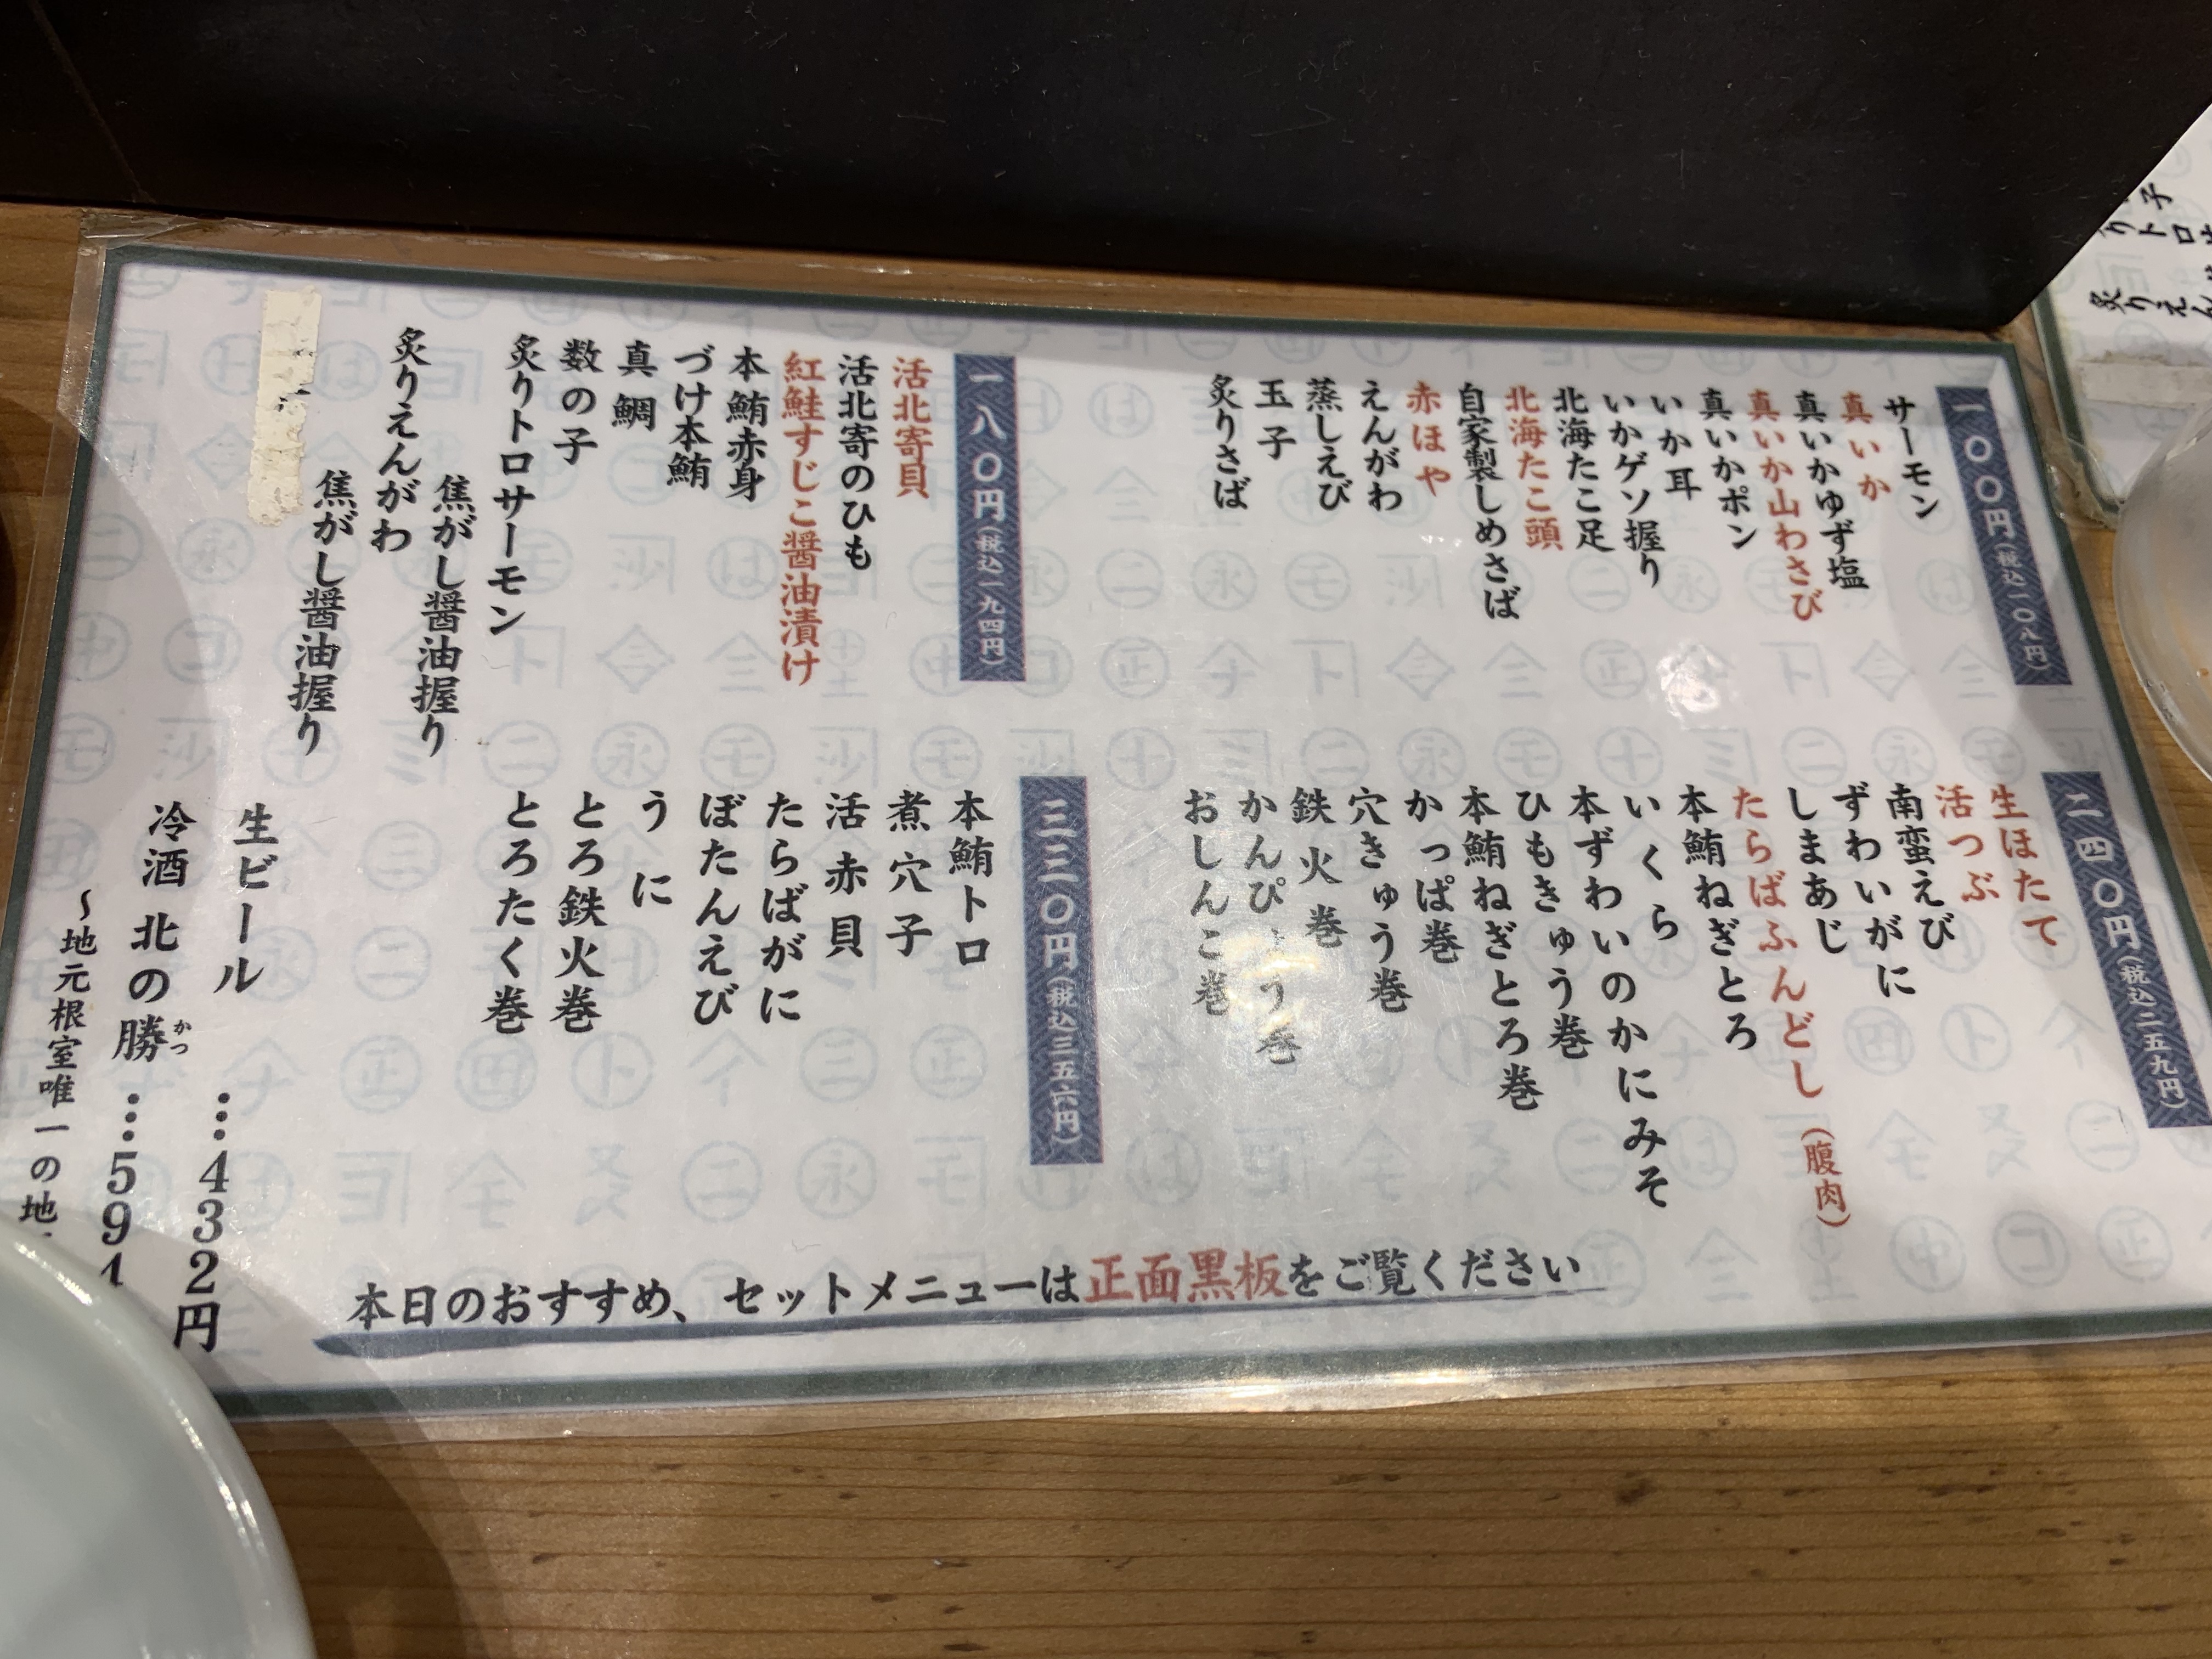 銀座 リピ確定 立食い寿司 根室花まる で北海道の絶品お寿司 新婚代夫婦の現代を生き抜く知恵